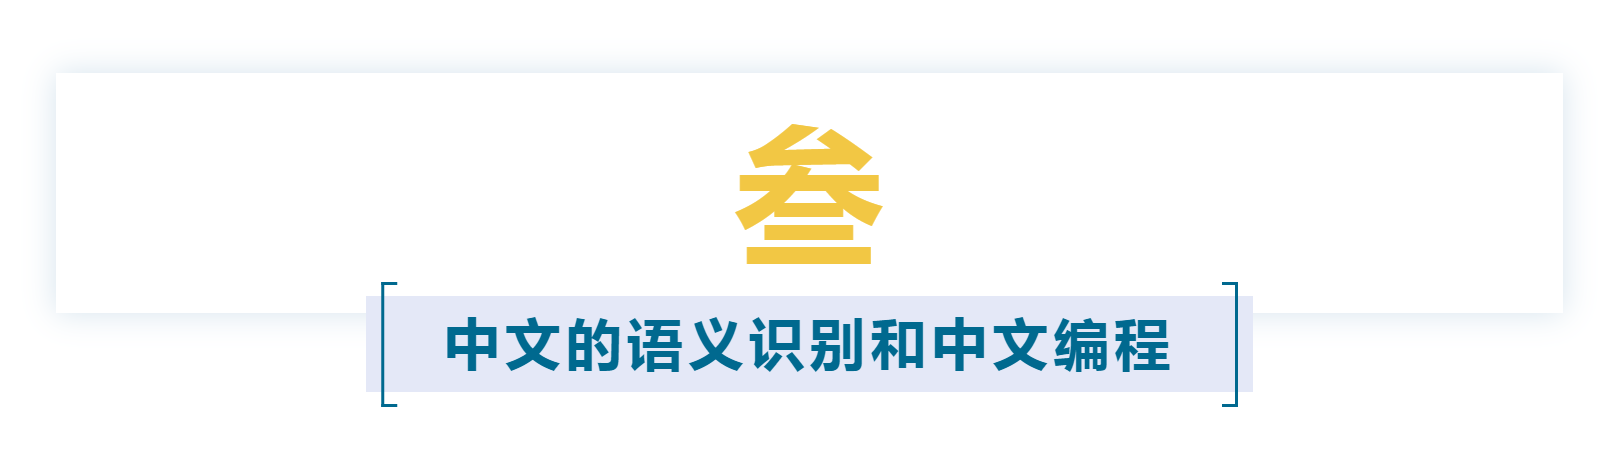 报告上集 | 《认文识字·中文字信息精准化》报告「建议收藏」